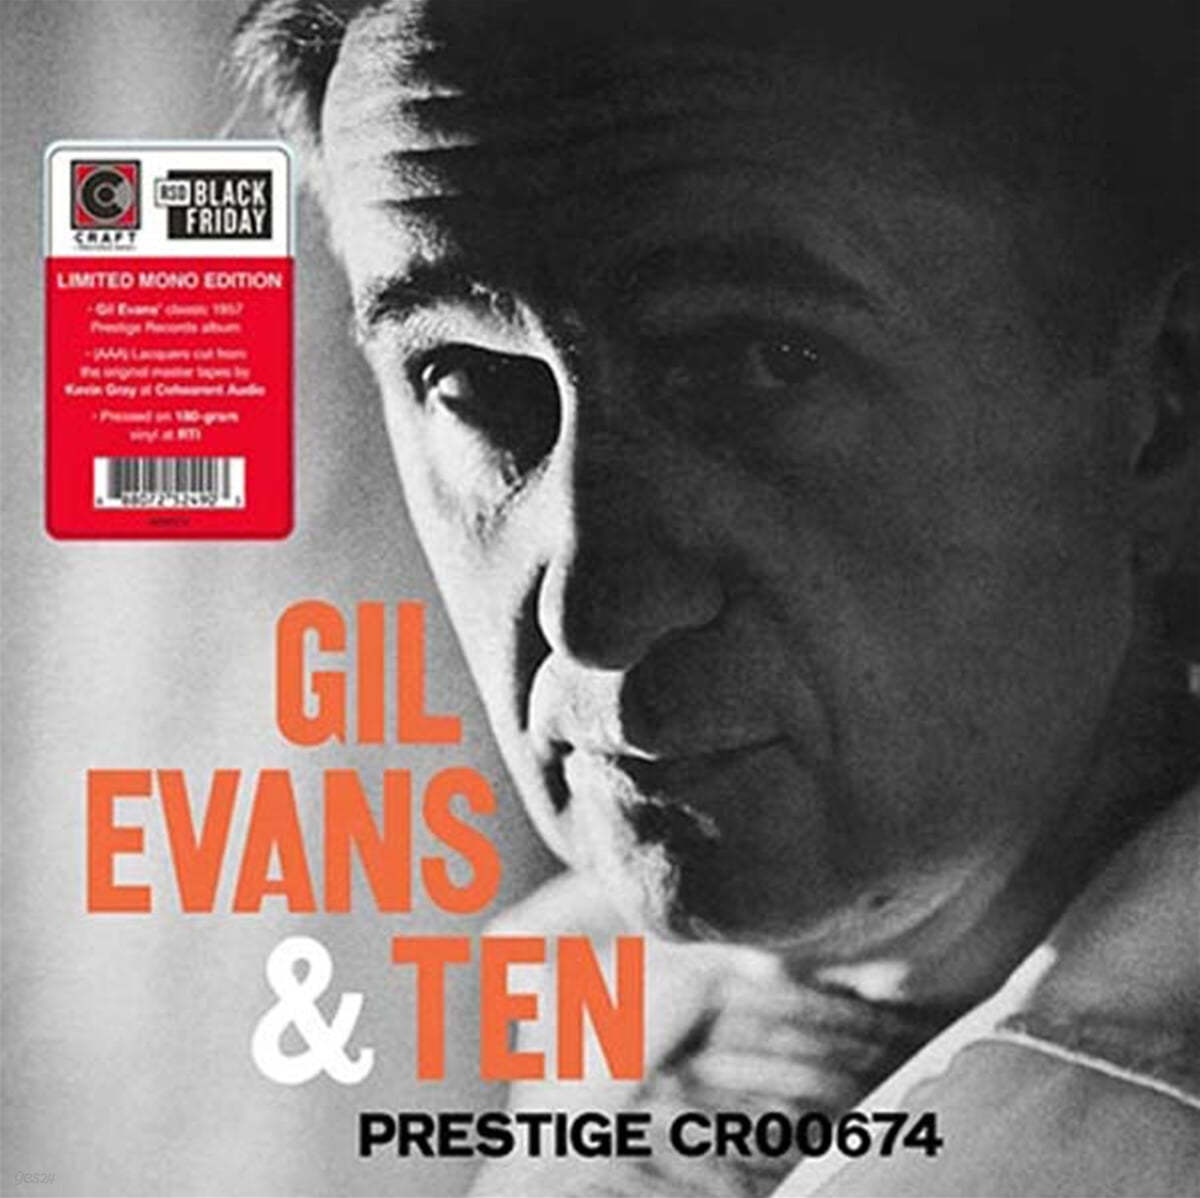 Gil Evans (길 에반스) - Gil Evans & Ten [LP]